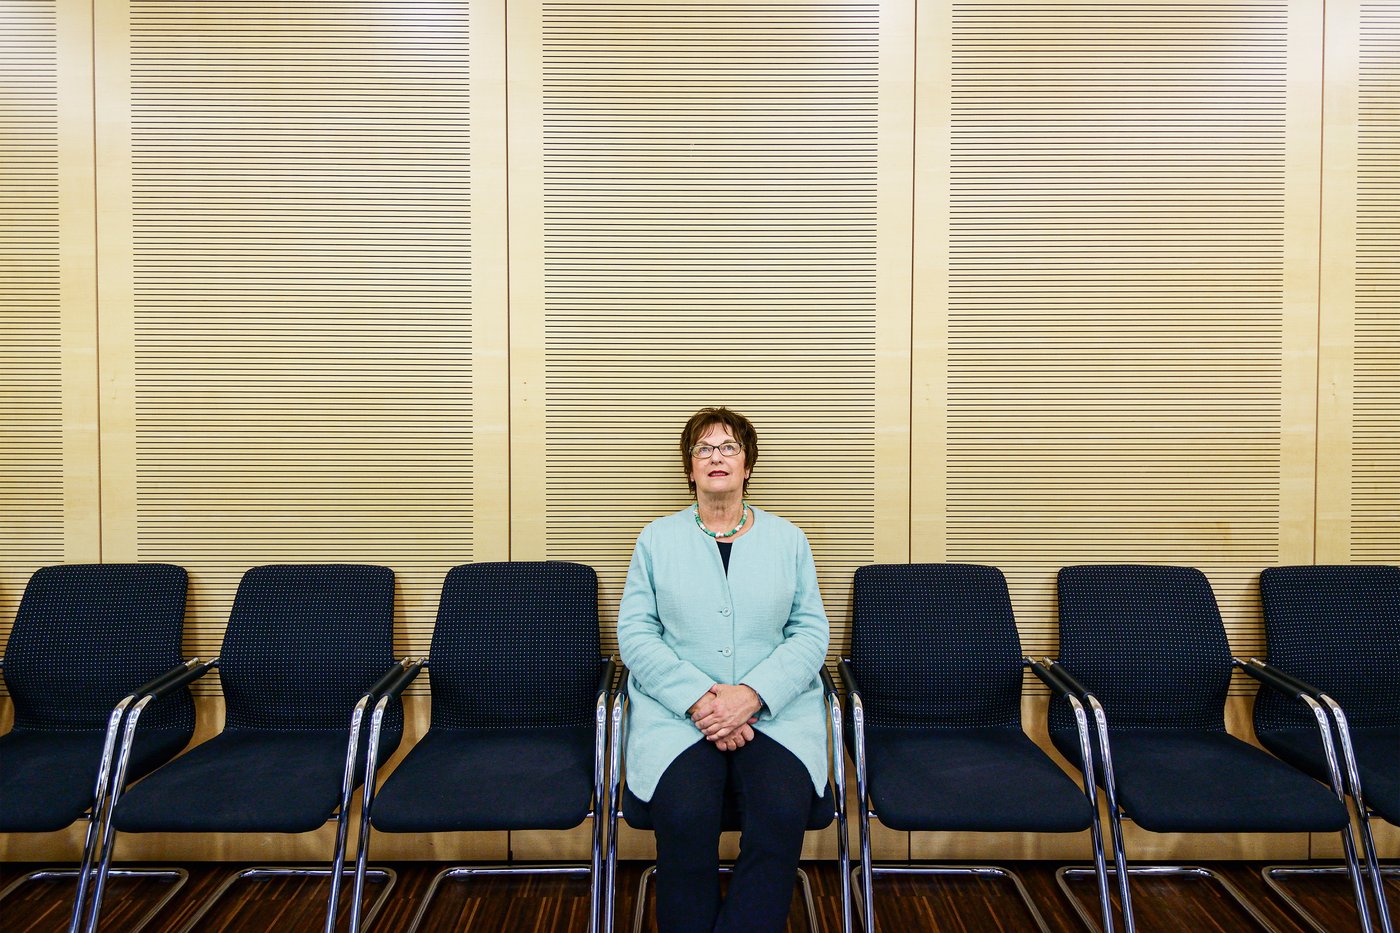 Brigitte Zypries sitzt in der Mitte einer Stuhreihe und schaut nach oben.